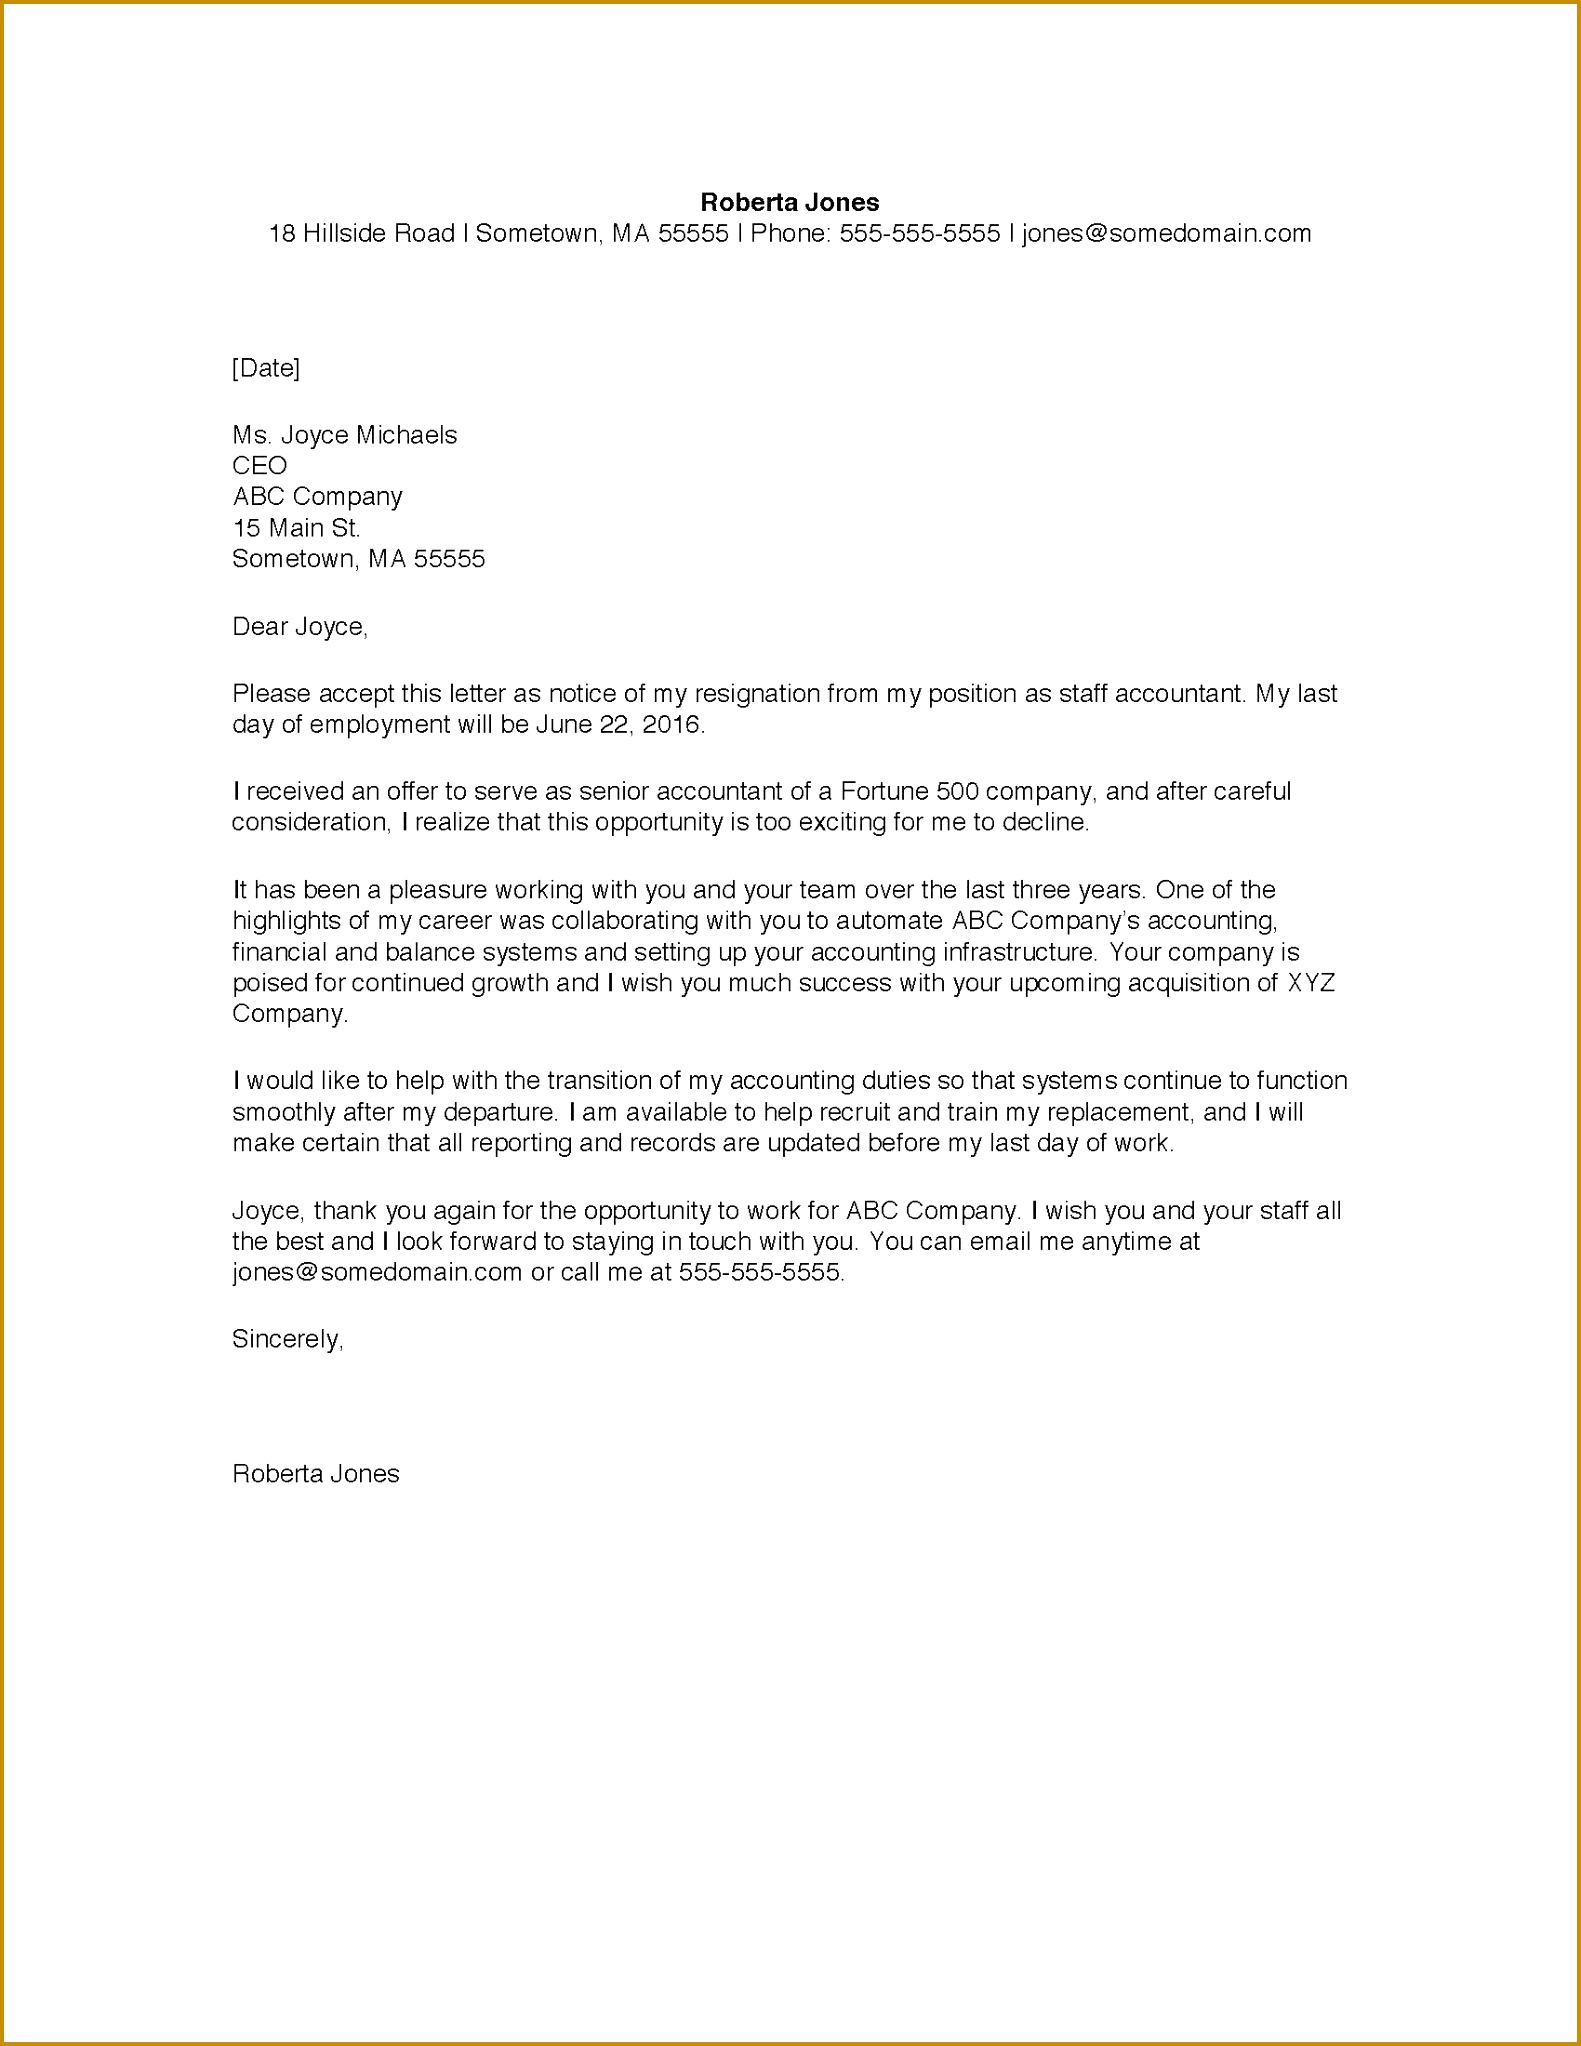 Sample resignation letter 15812046